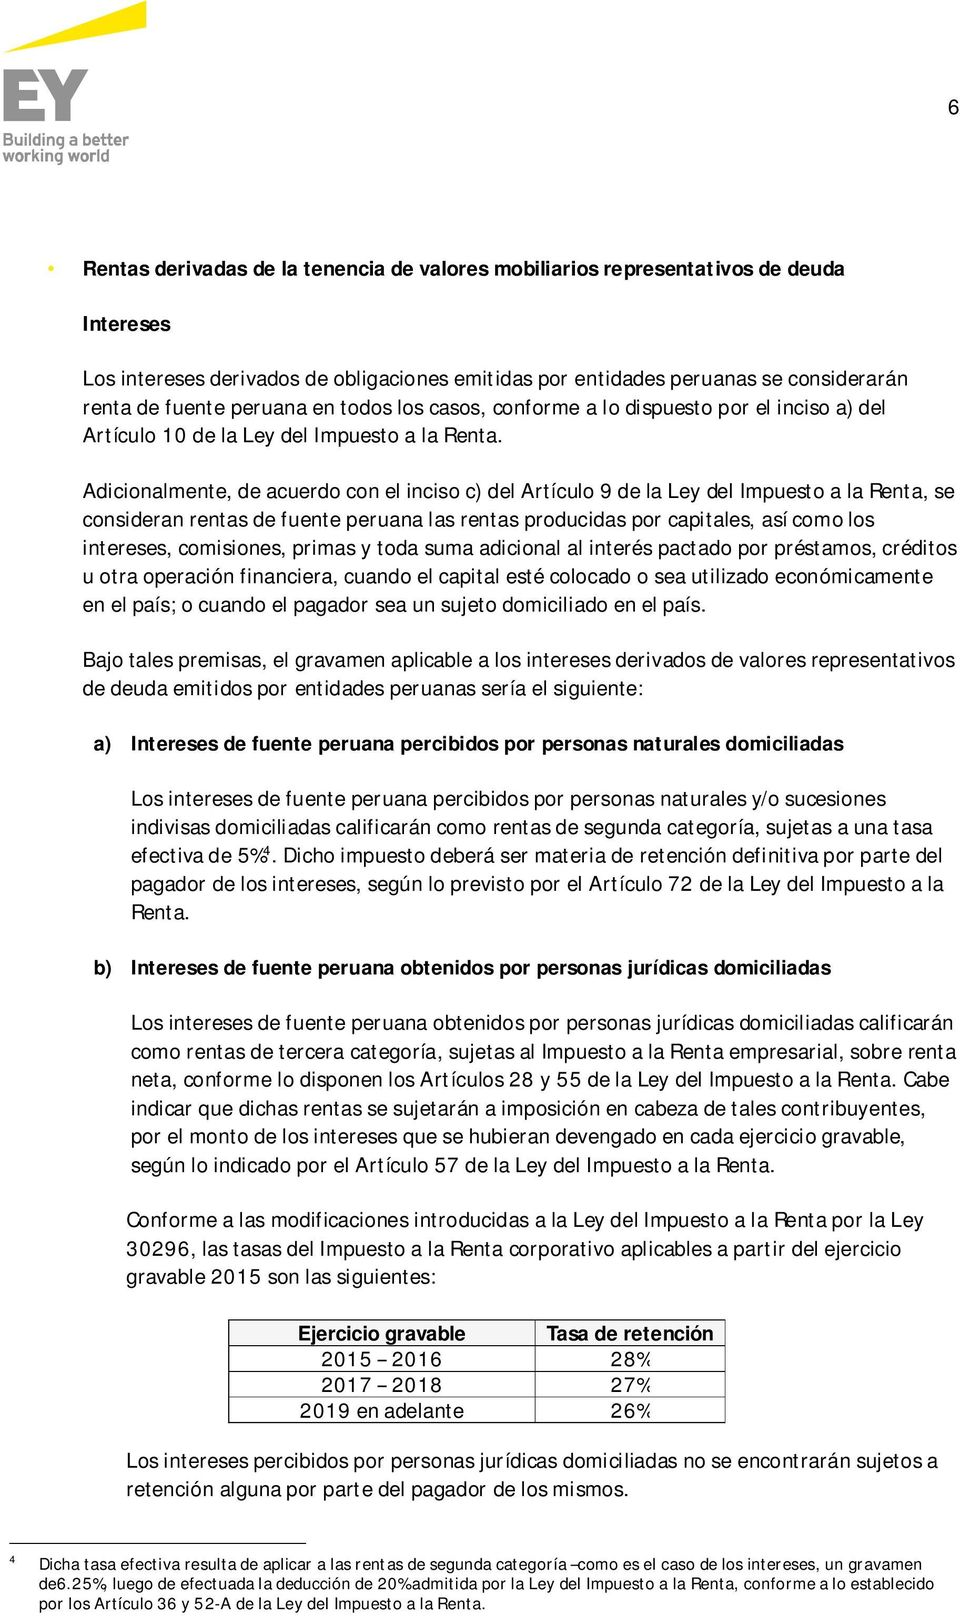 Adicionalmente, de acuerdo con el inciso c) del Artículo 9 de la Ley del Impuesto a la Renta, se consideran rentas de fuente peruana las rentas producidas por capitales, así como los intereses,